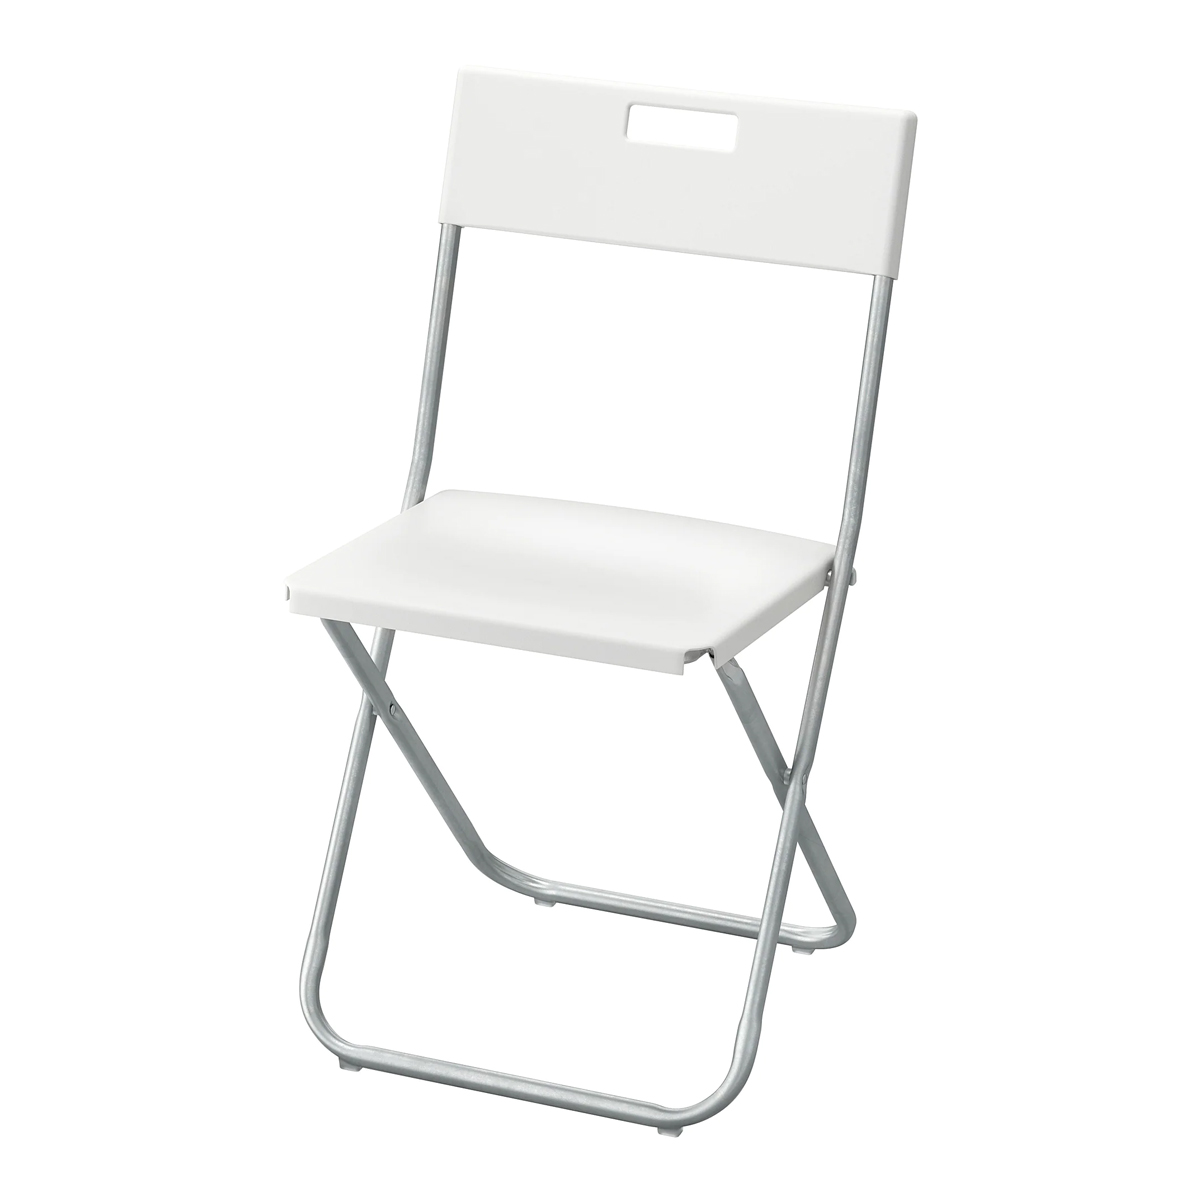 GUNDE stolica na rasklapanje, bijela